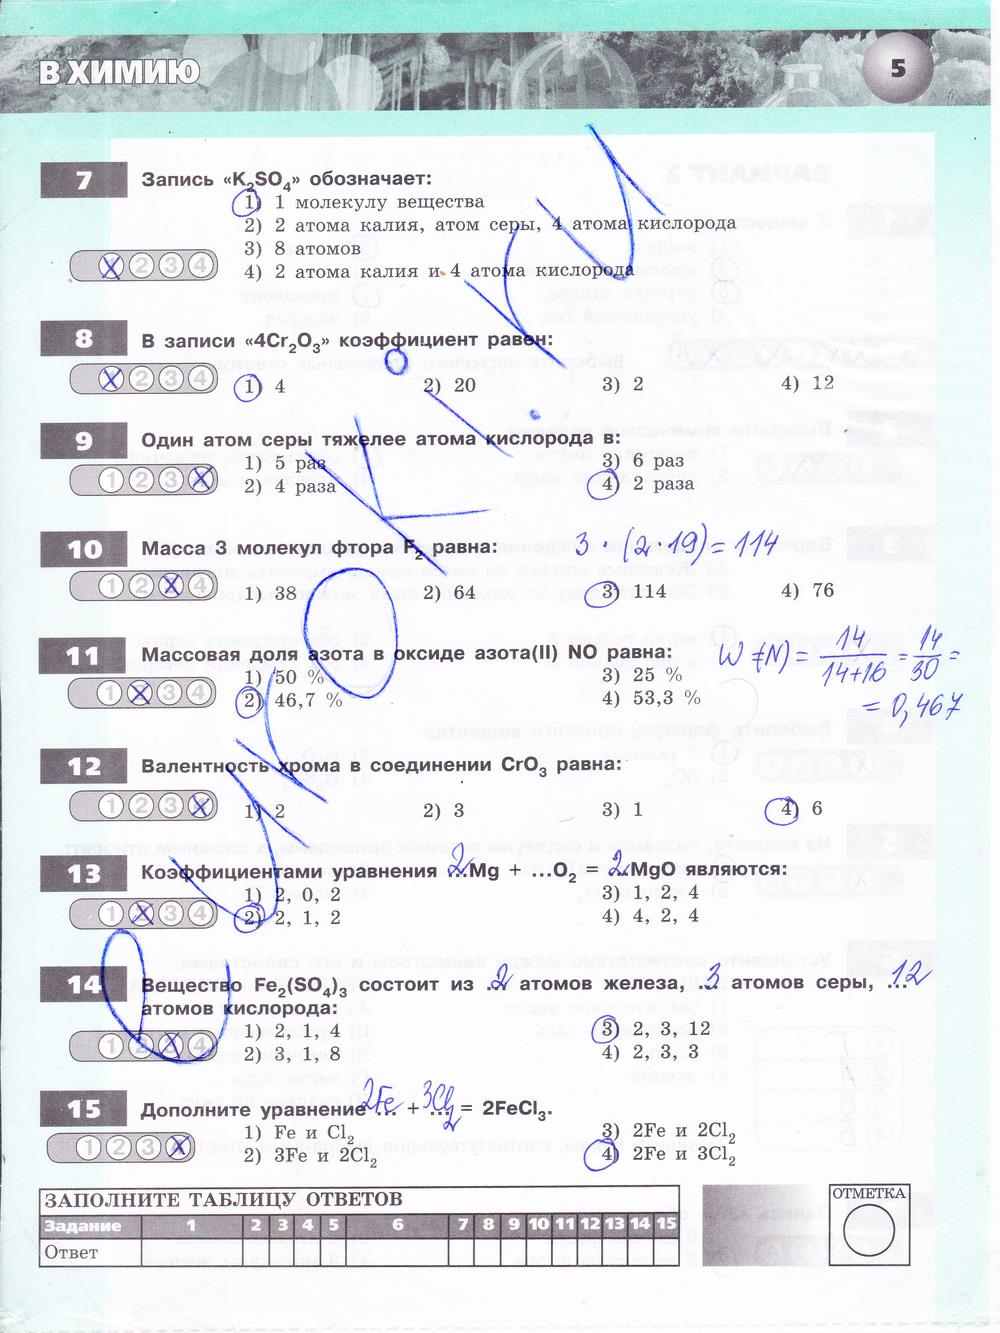 гдз 8 класс тетрадь-экзаменатор страница 5 химия Бобылева, Бирюлина